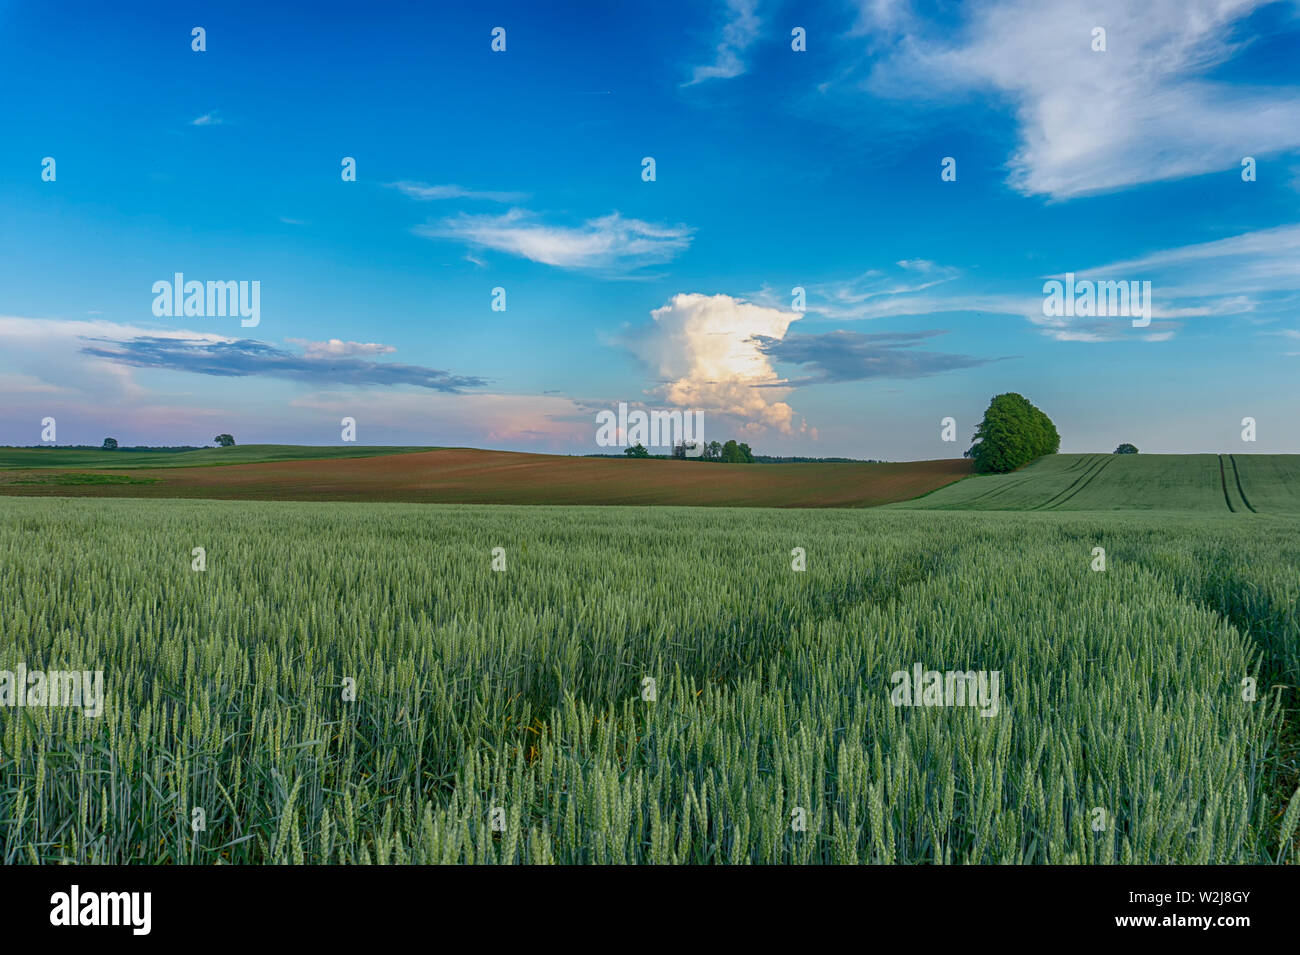 Les jeunes cultures céréalières vert dans un champ agricole au coucher du soleil avec les douces collines et nuages colorés dans un ciel bleu Banque D'Images